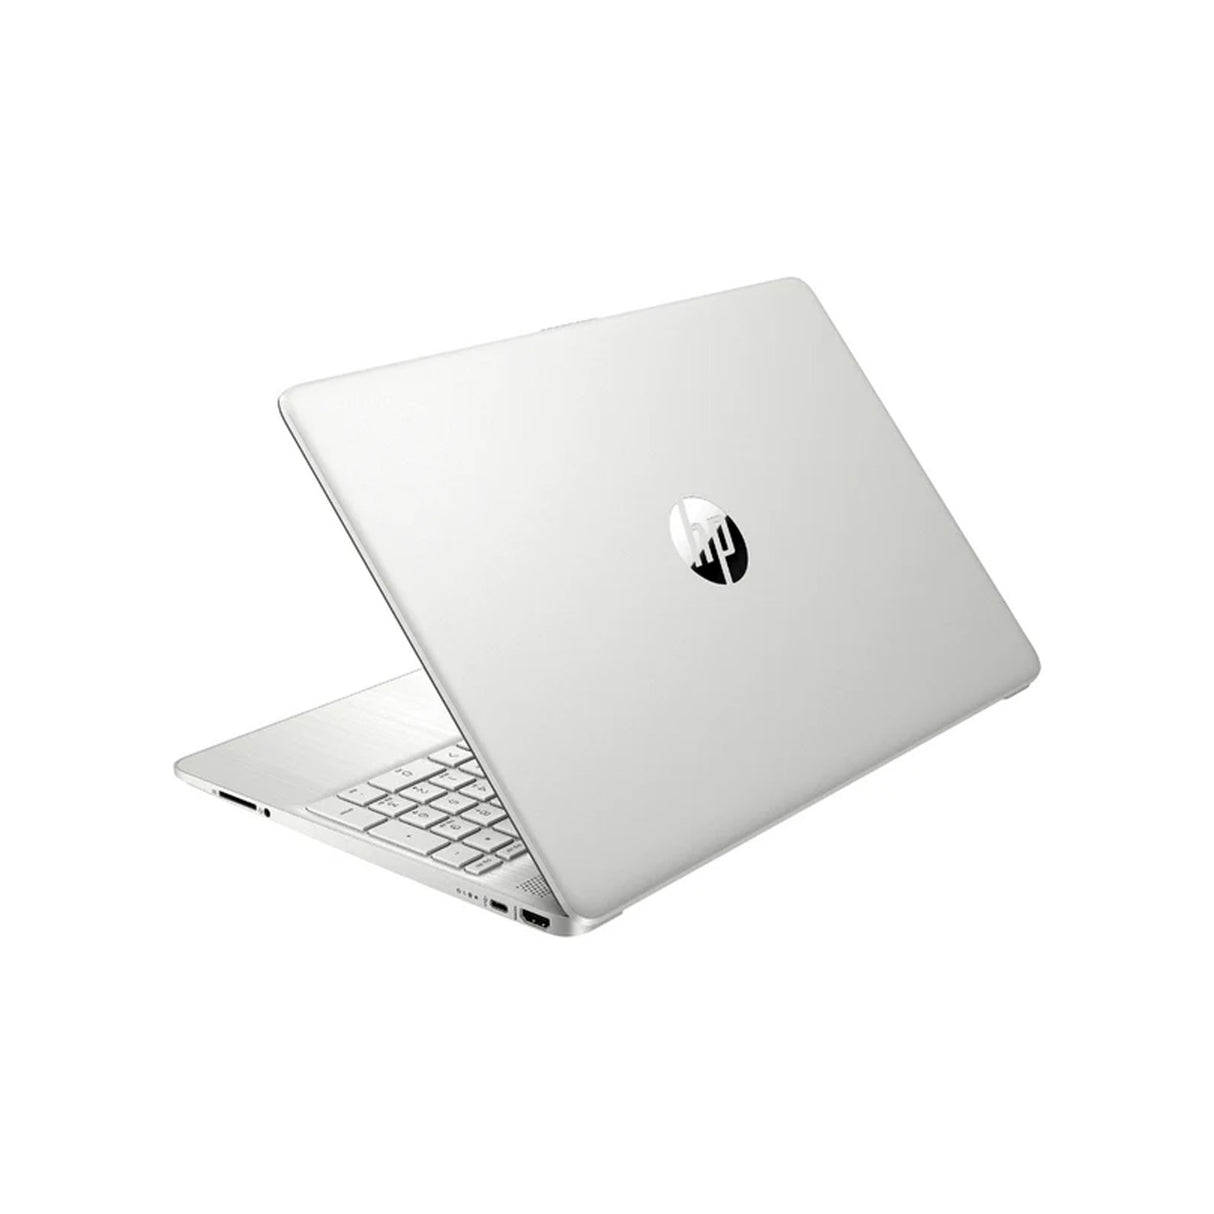 Best Laptop: HP 15s - i3 12th Gen, 8GB RAM, 512GB SSD, Win 11, 15.6", Silver (MS Office)